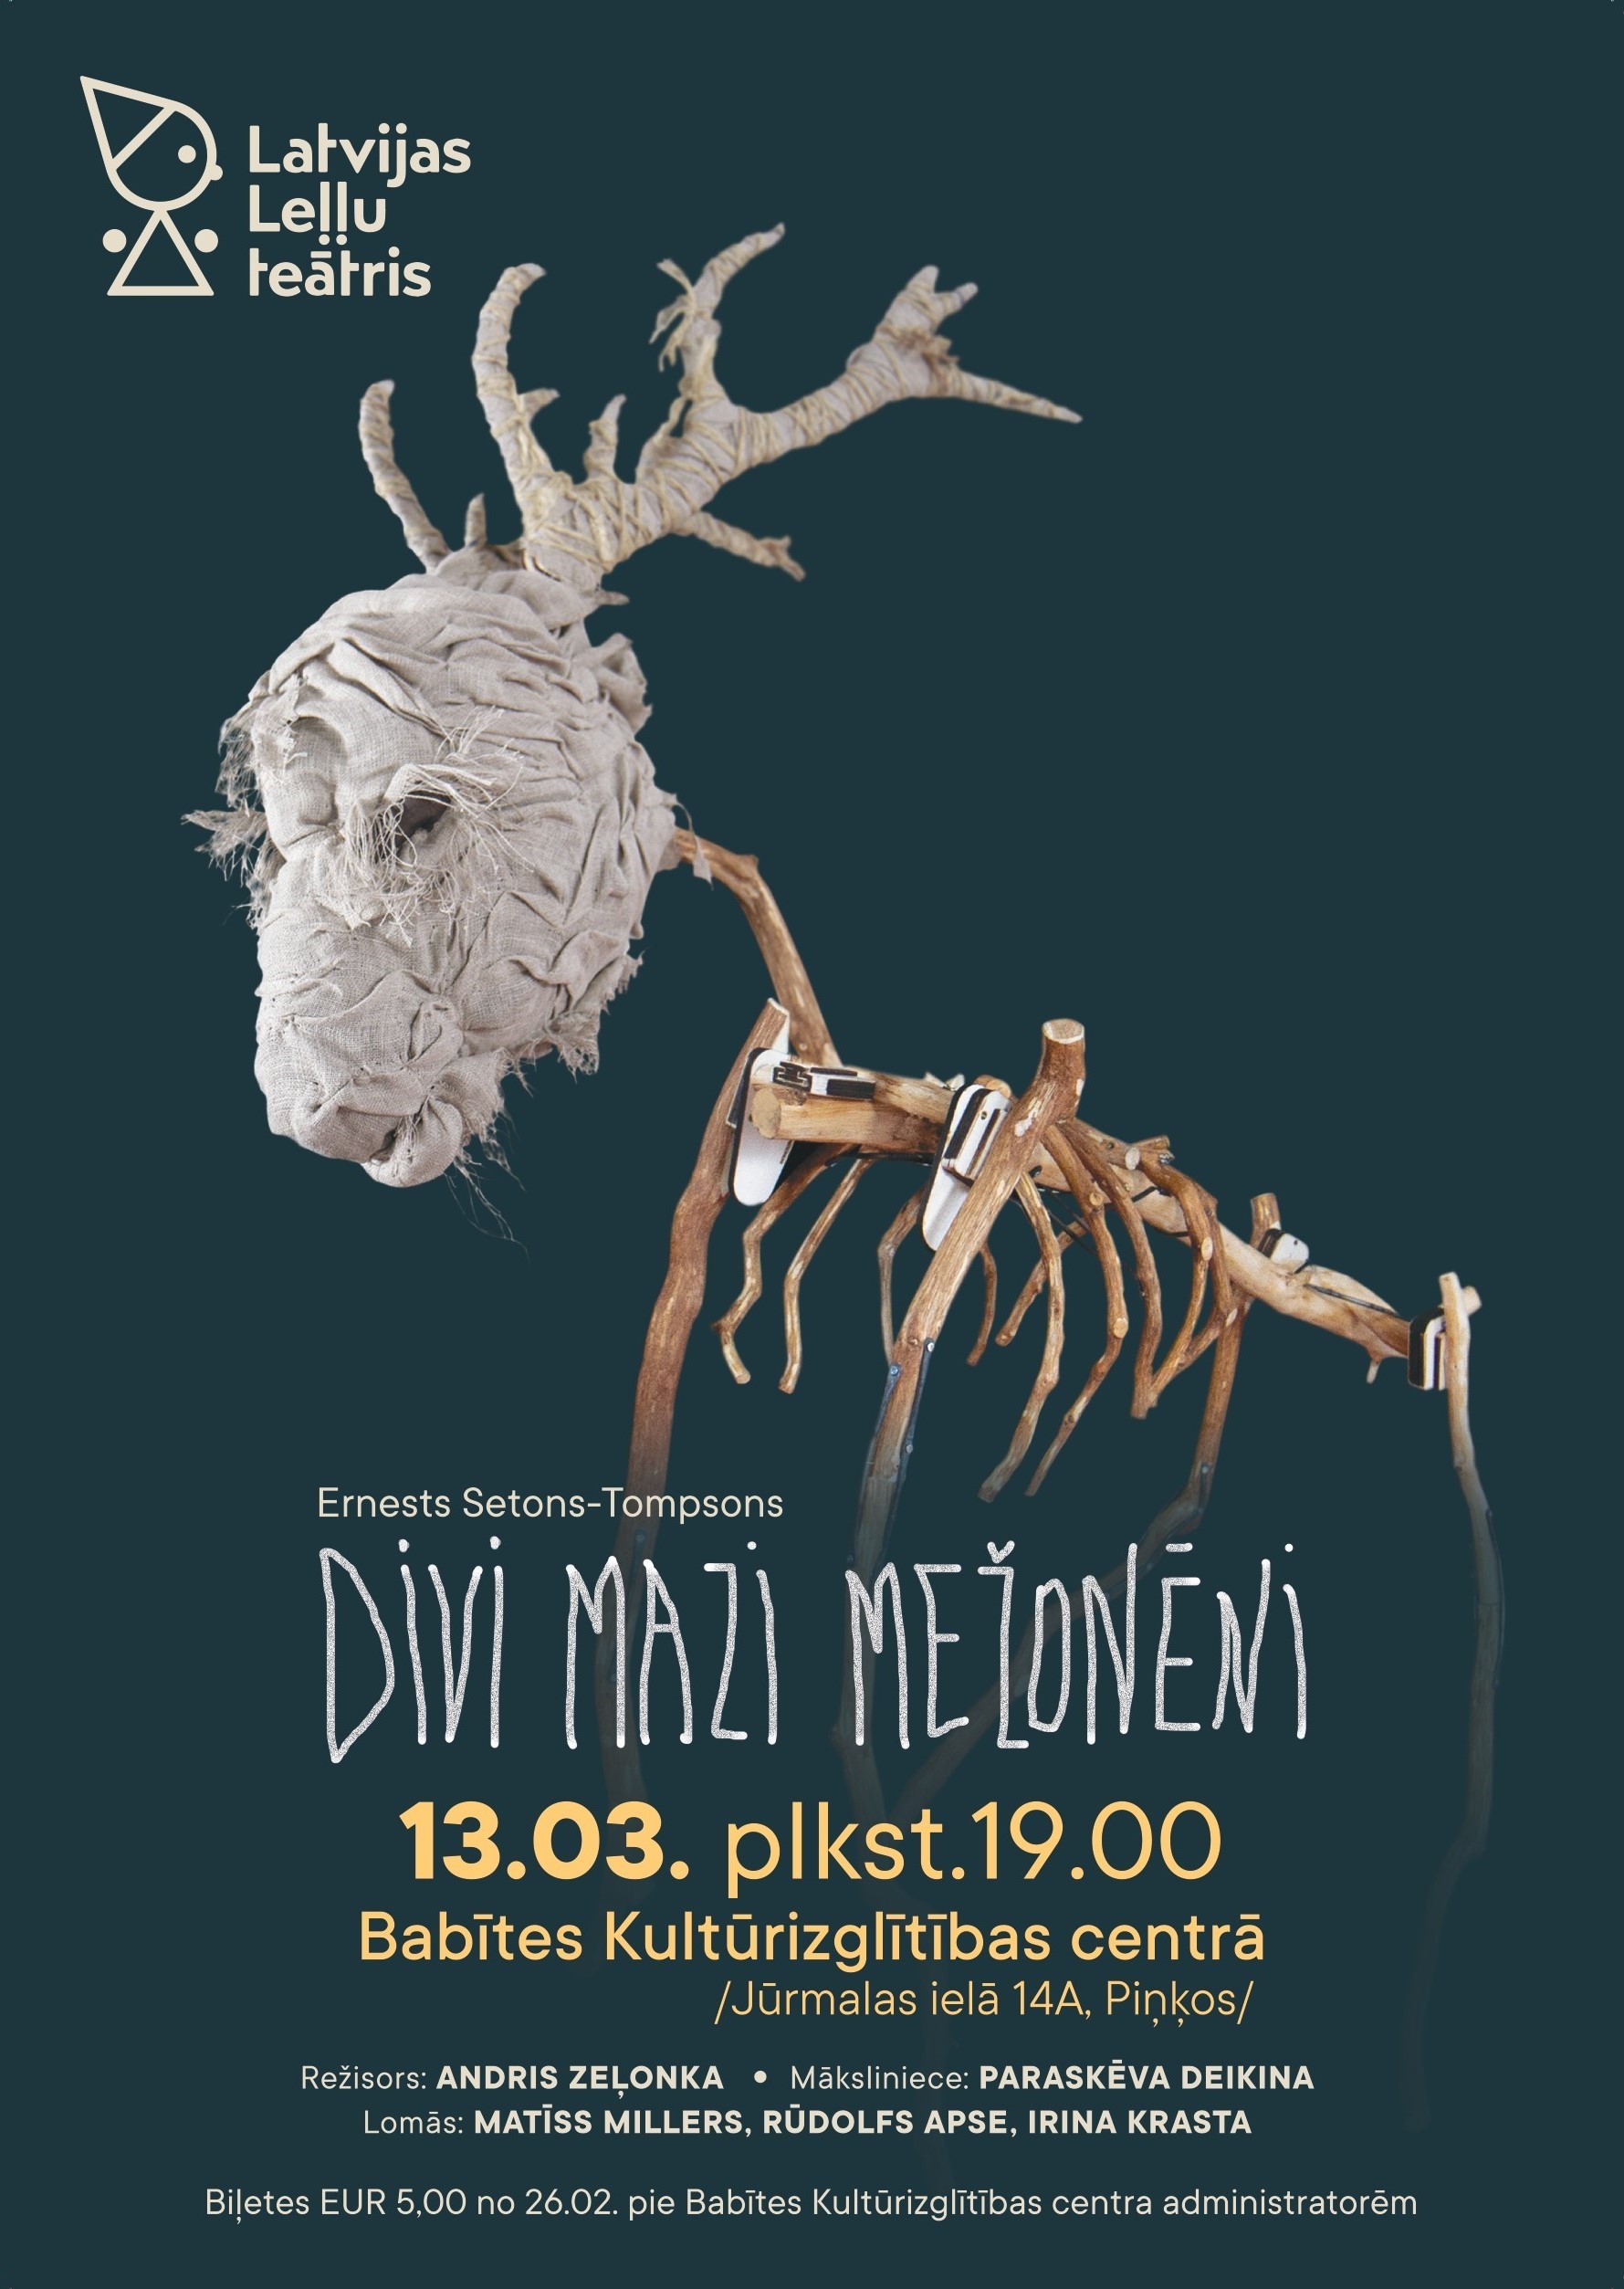 Stilizēta dzīvnieka grafika un tumši zaļa fona, kas ataino Latvijas Leļļu teātra izrādes DIVI MAZI MEŽONĒNI saturu